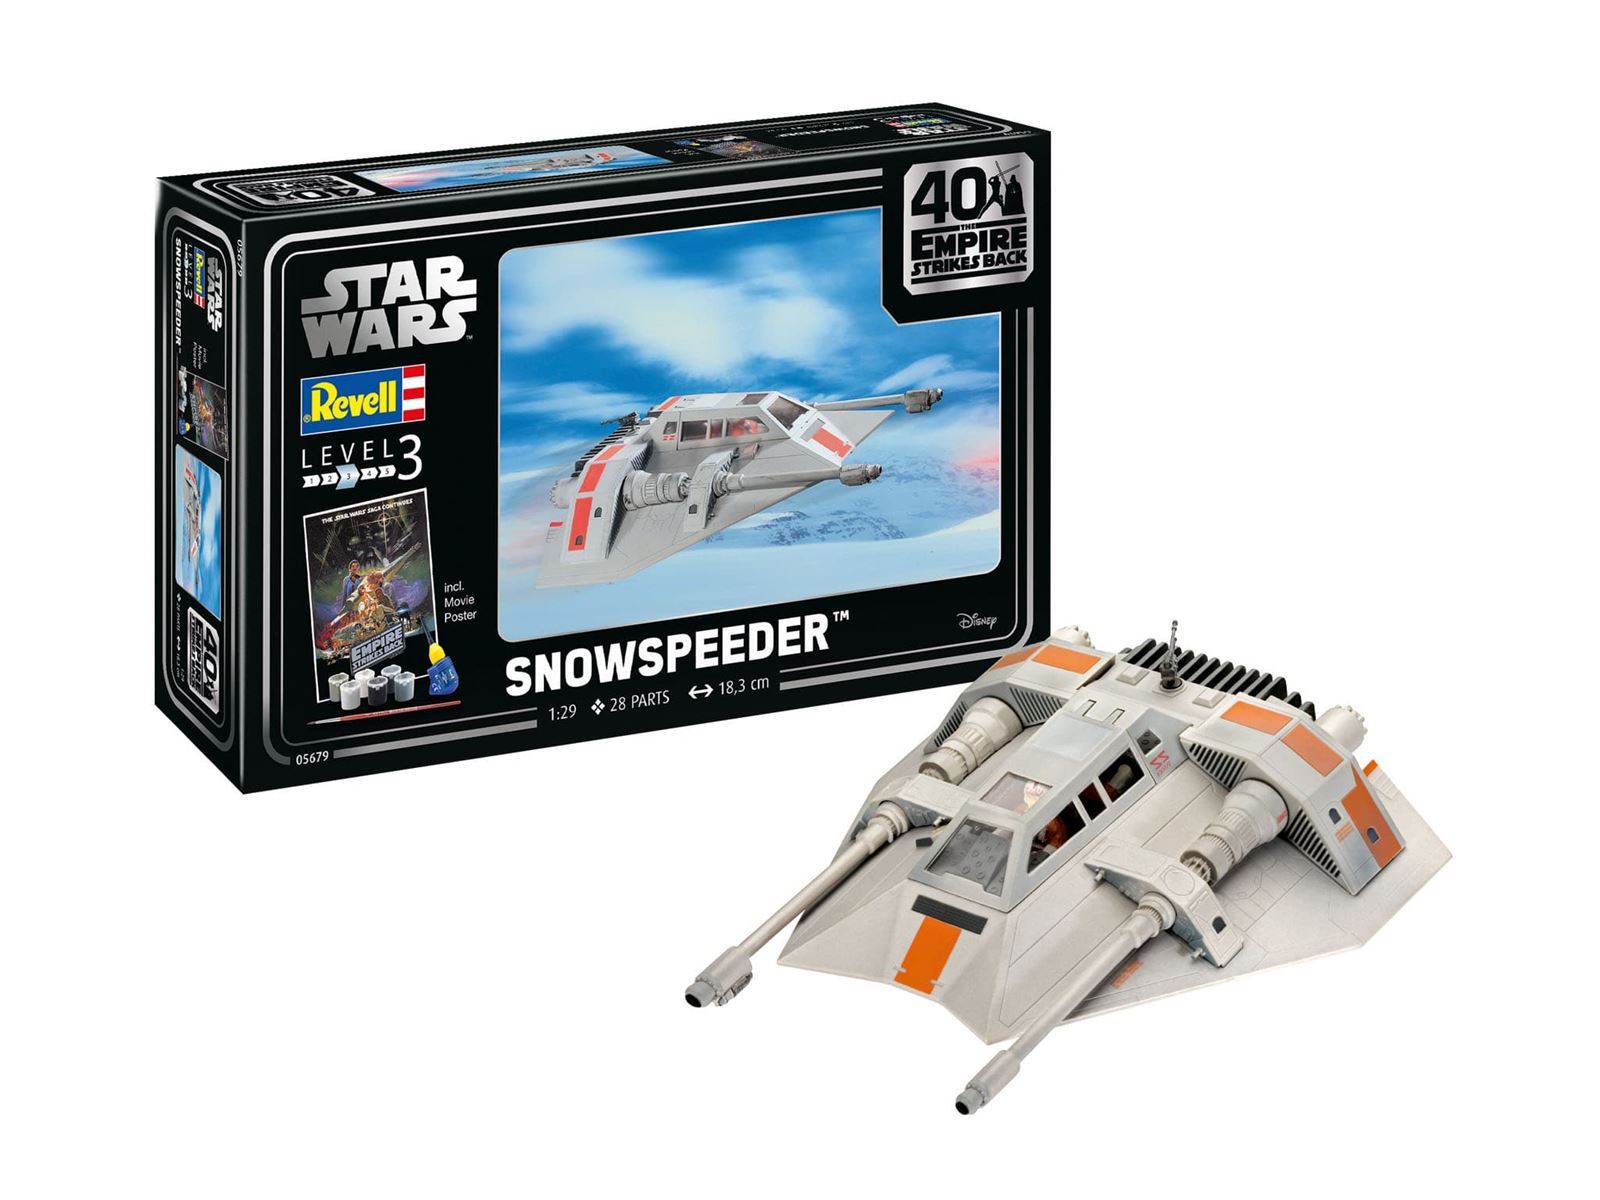 1/29 Gift Set Snowspeeder - 40th Anniversary The Empire Strikes Back - Imagen 1